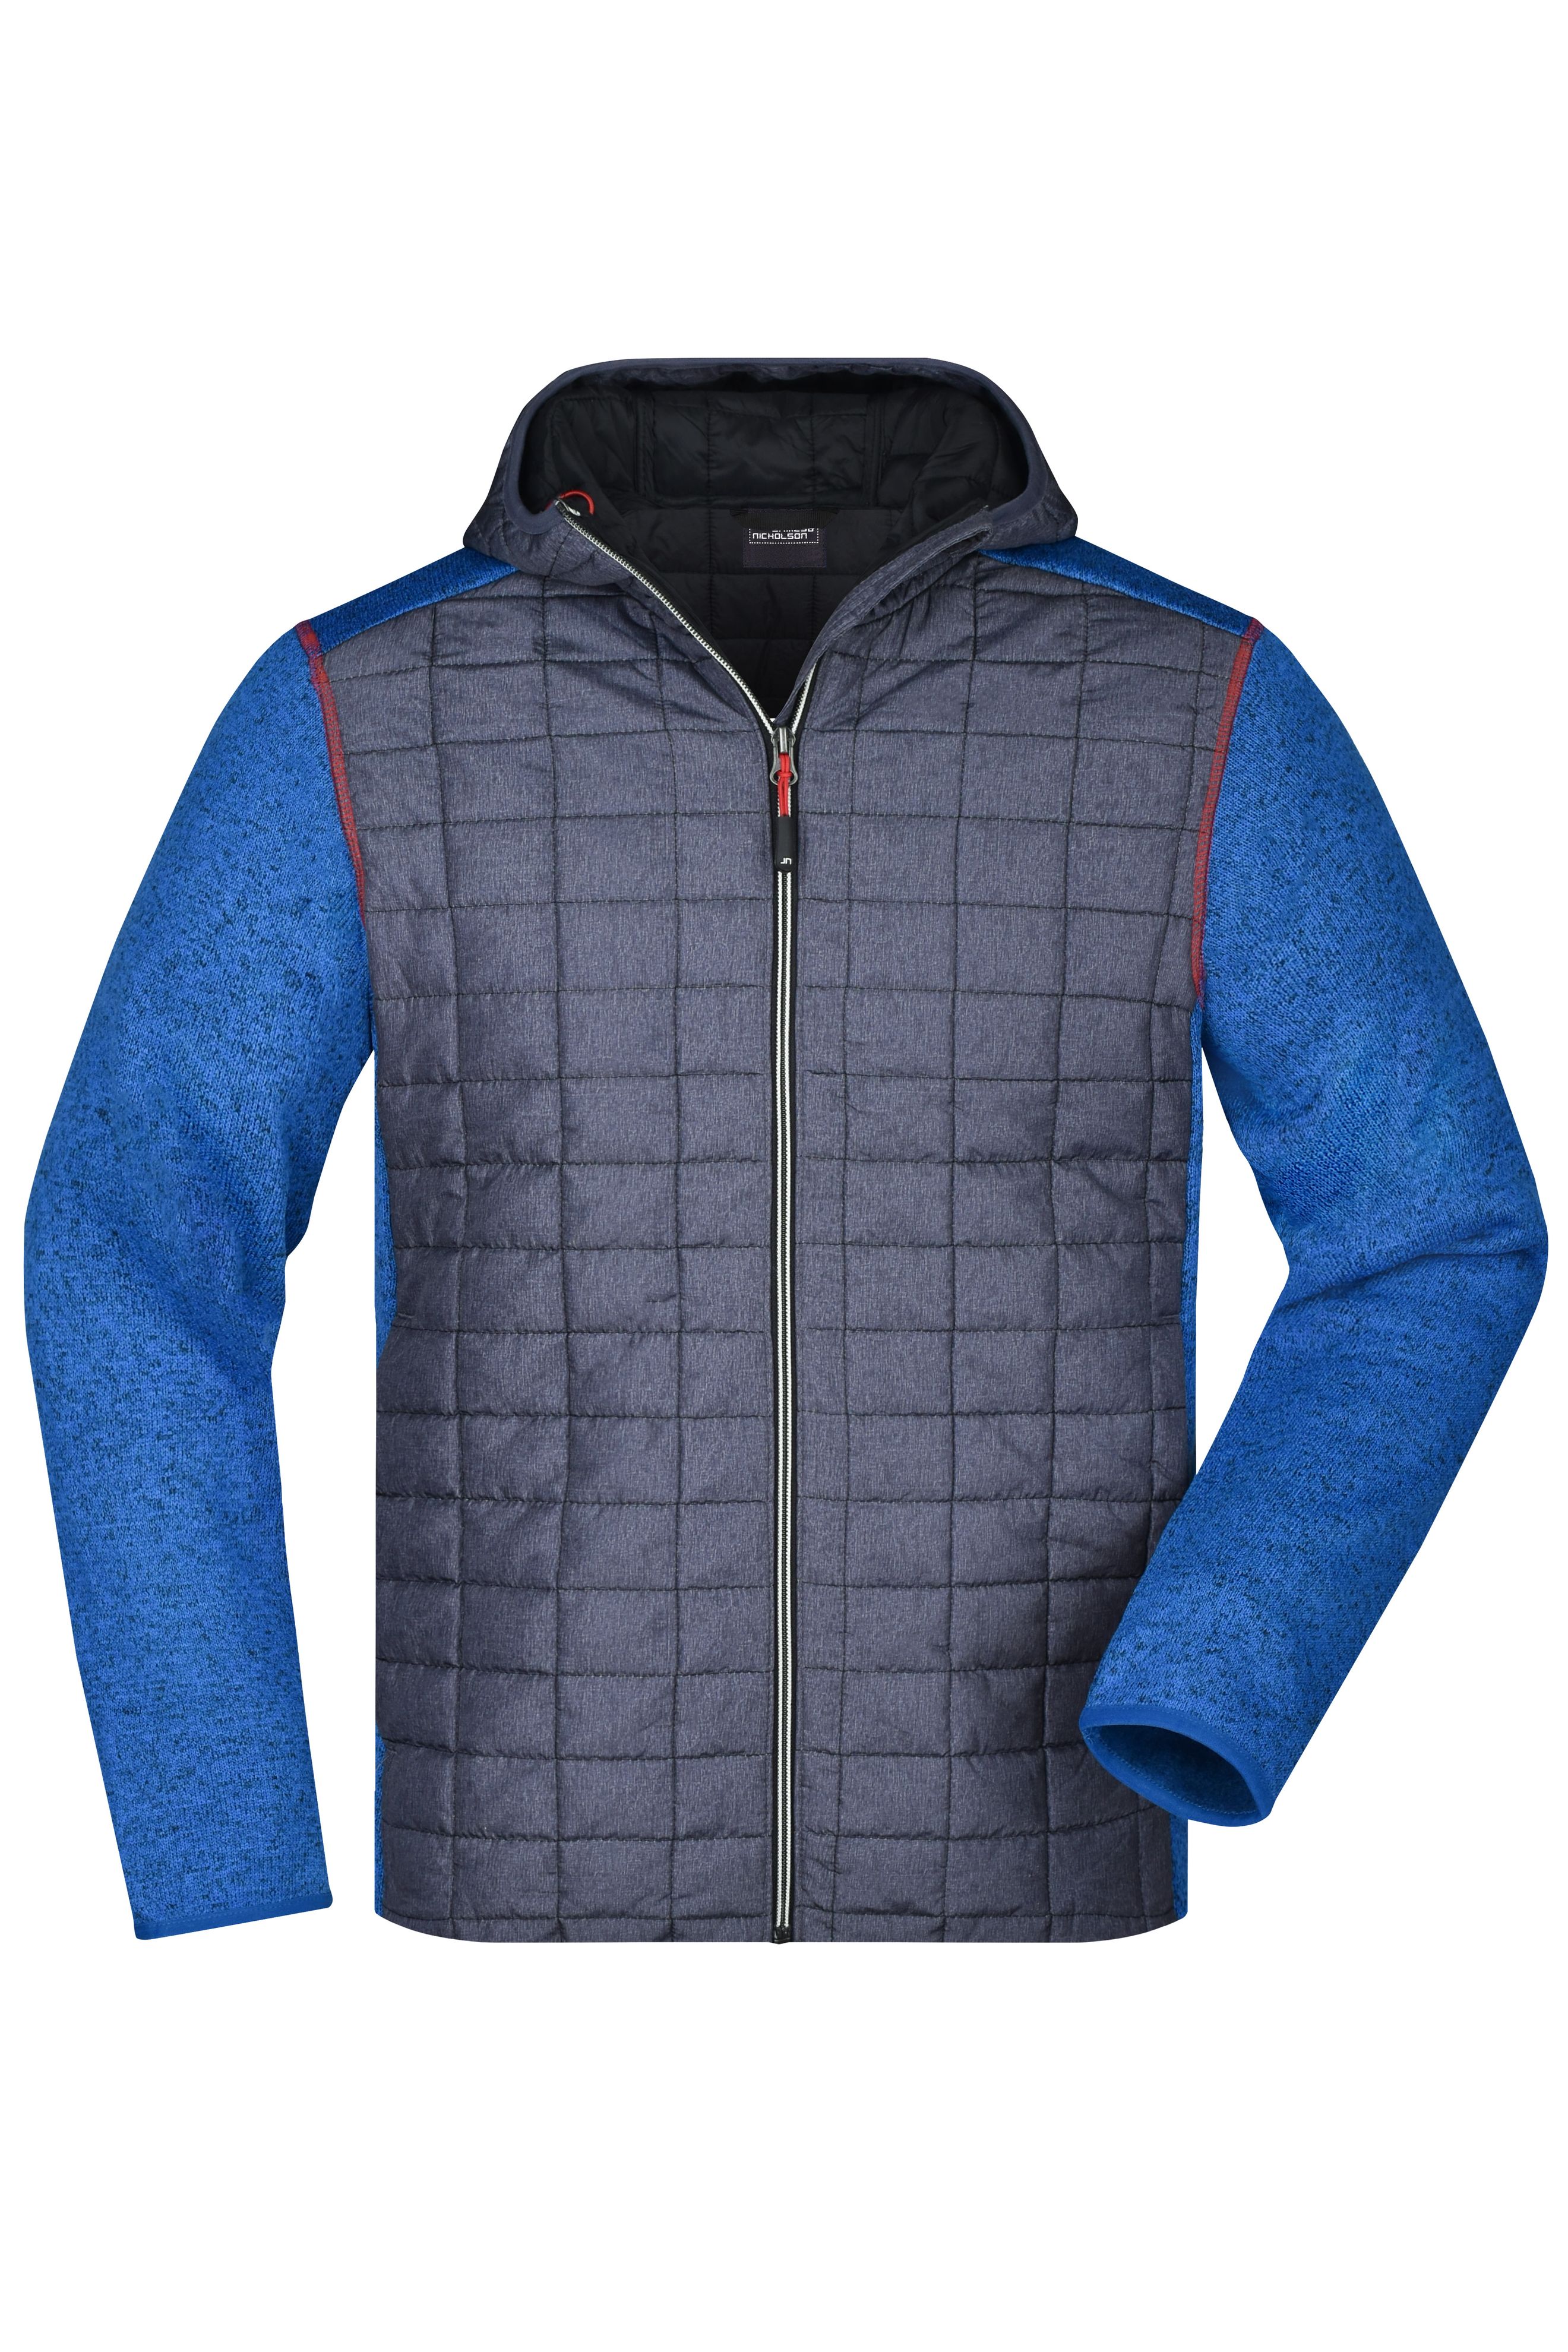 Men Men's Knitted Hybrid Jacket Royal-melange/anthracite-melange-Daiber